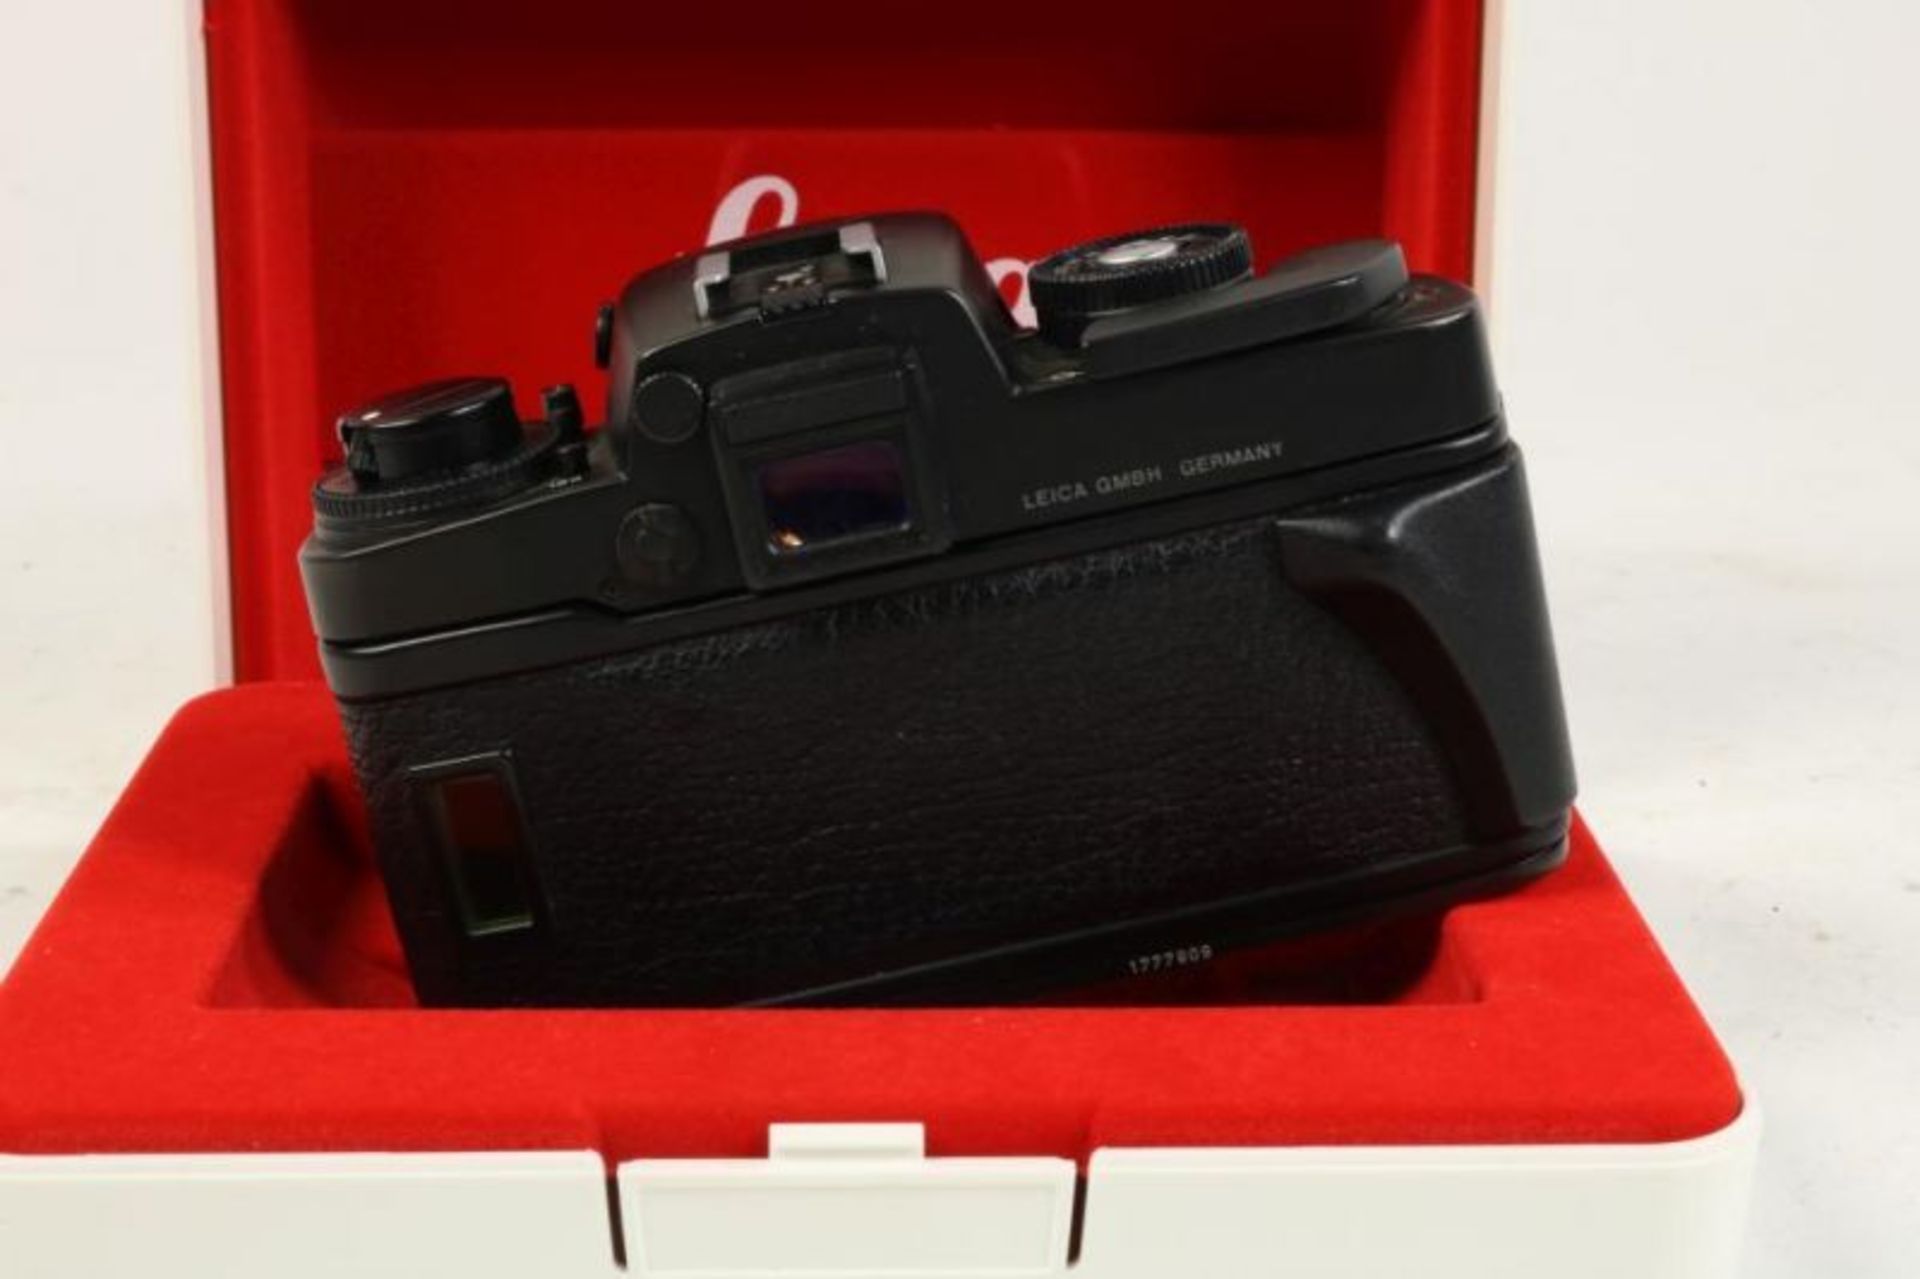 Leica RE spiegelreflexcamera met diverse lensen, macro-ring, waarbij originele doos - Bild 3 aus 5